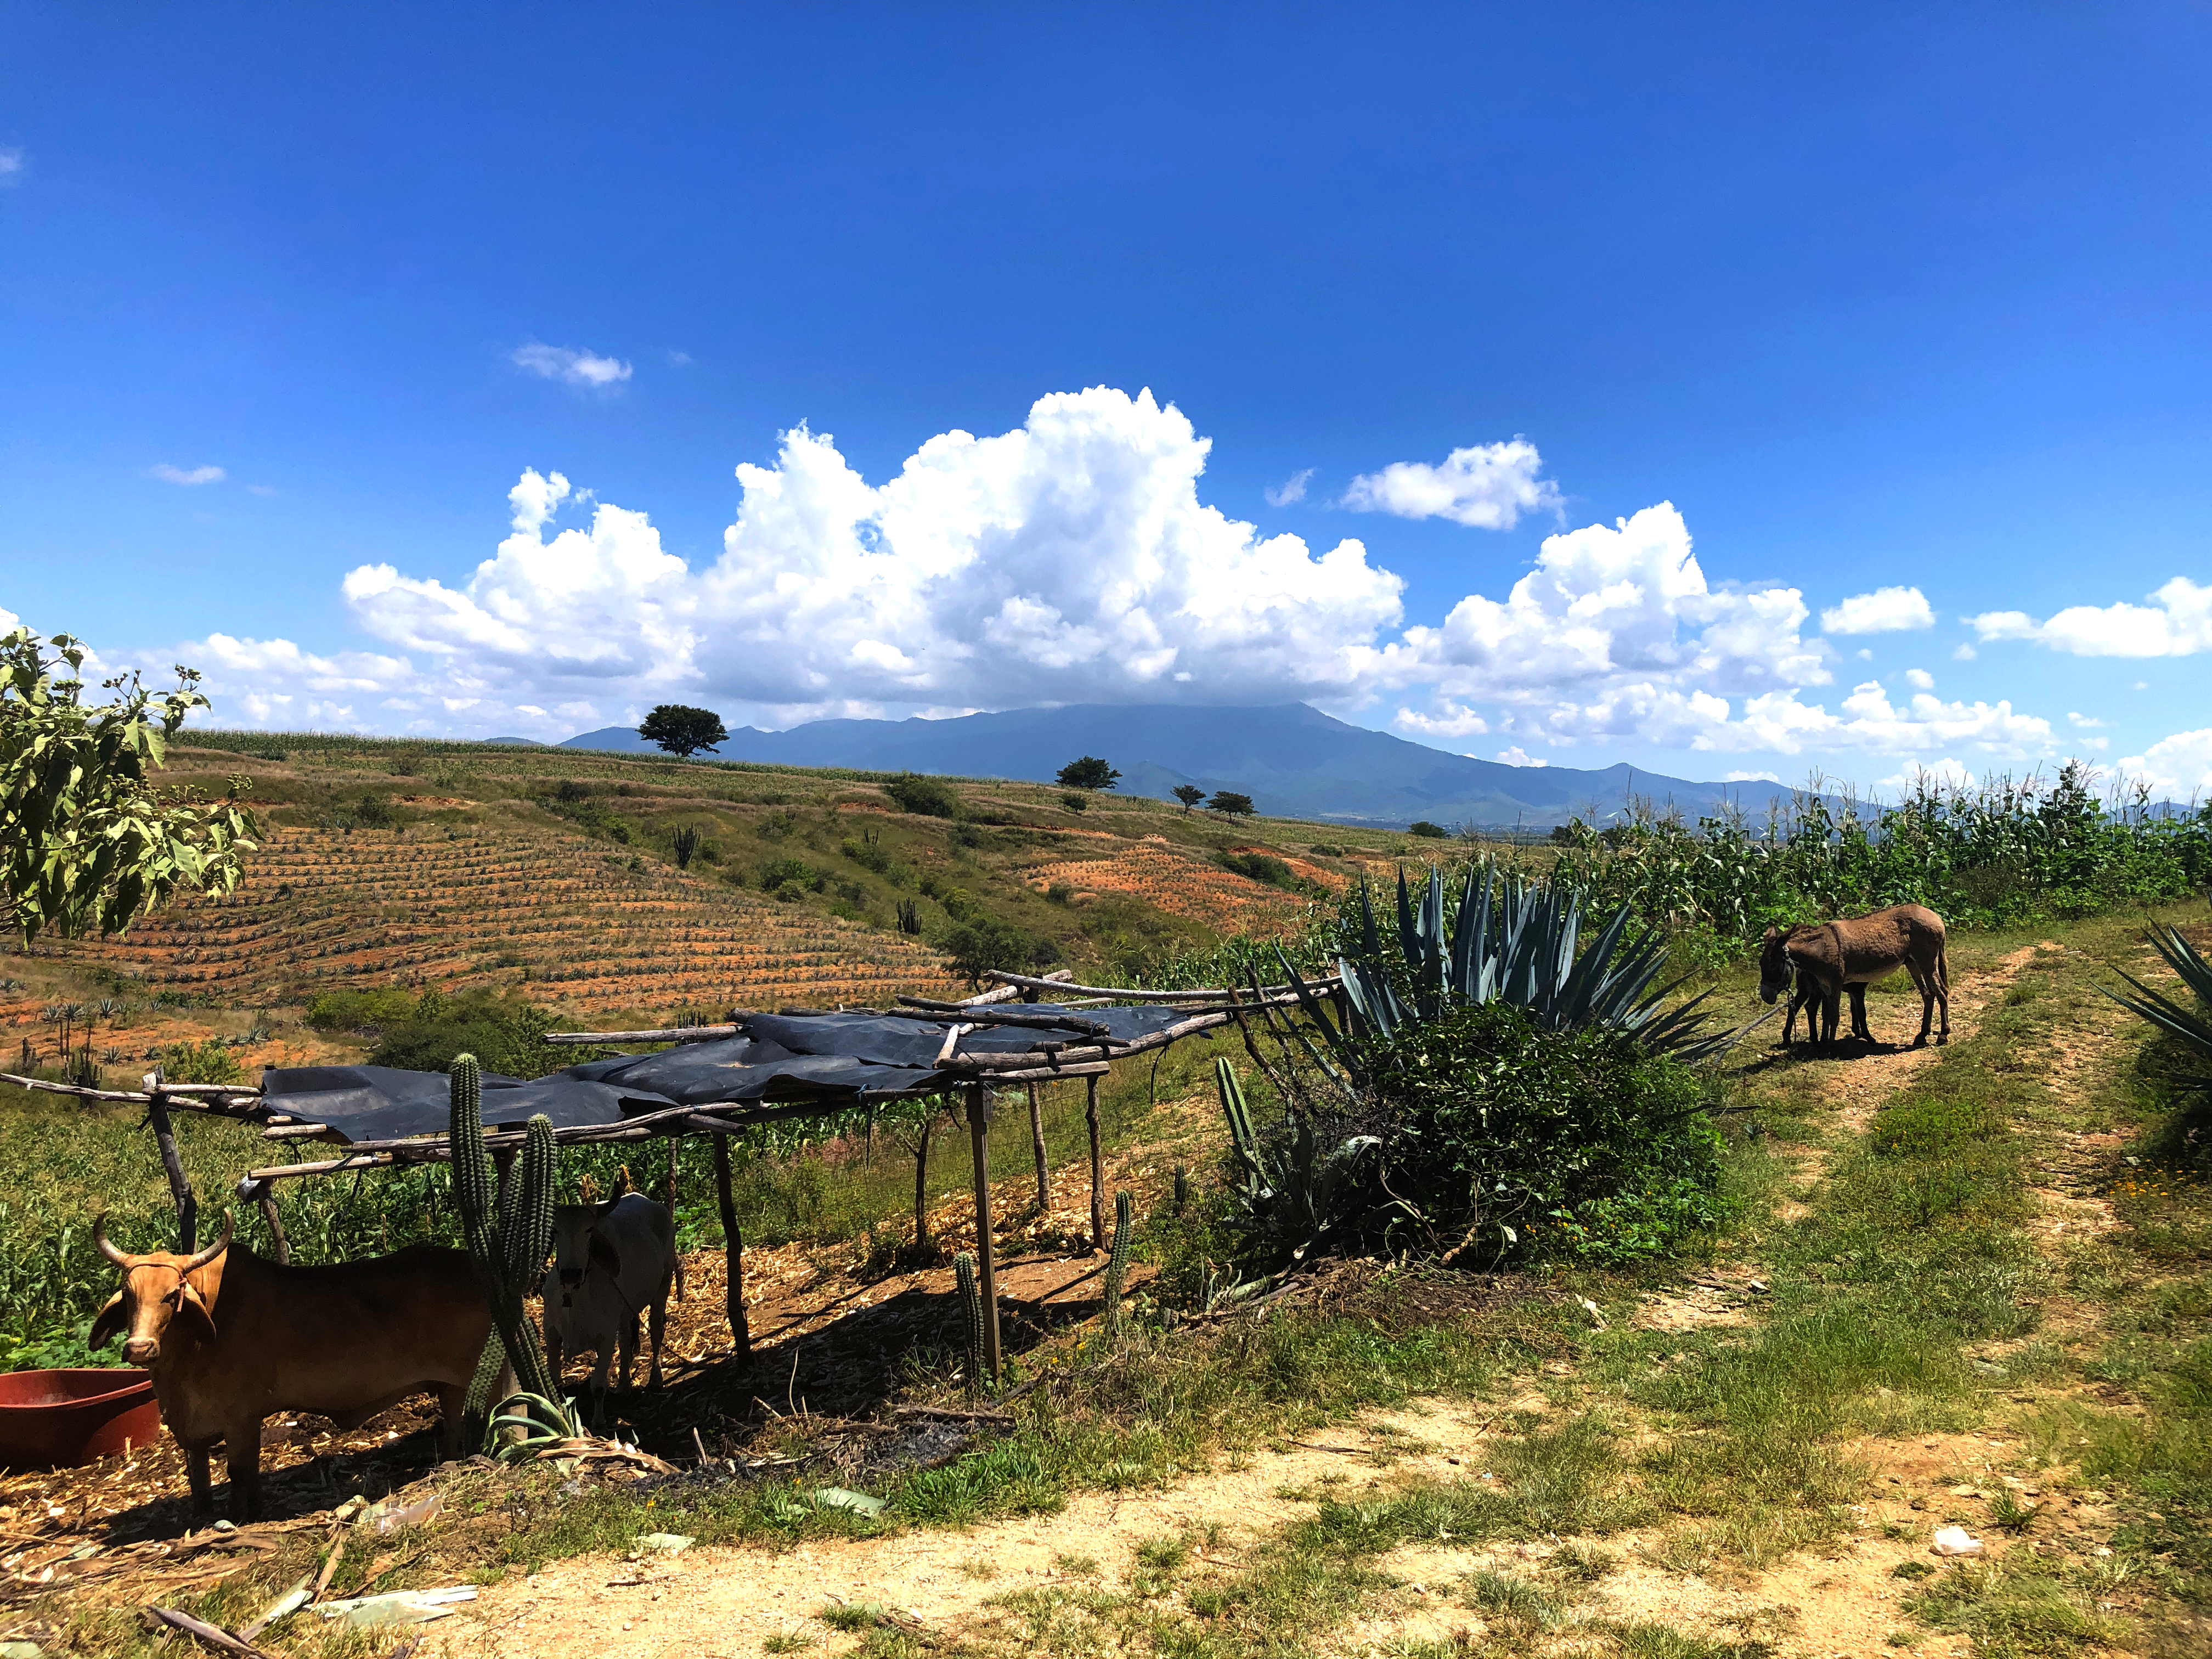 Oásis de mezcal: reforestación, captación de agua y cultivo de agave en los Valles Centrales de Oaxaca